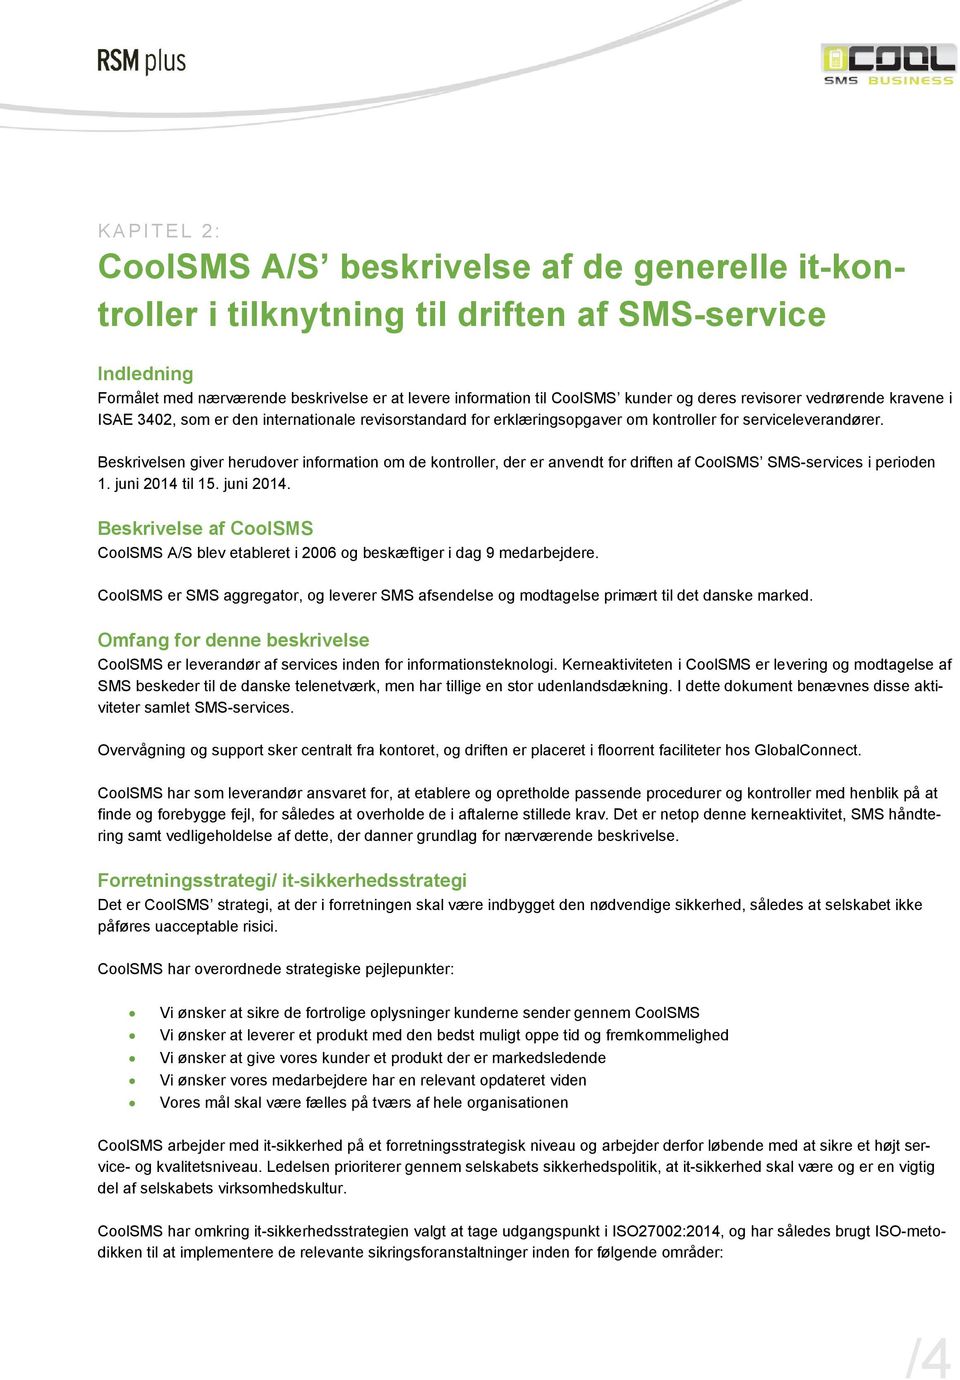 Beskrivelsen giver herudover information om de kontroller, der er anvendt for driften af CoolSMS SMS-services i perioden 1. juni 2014 